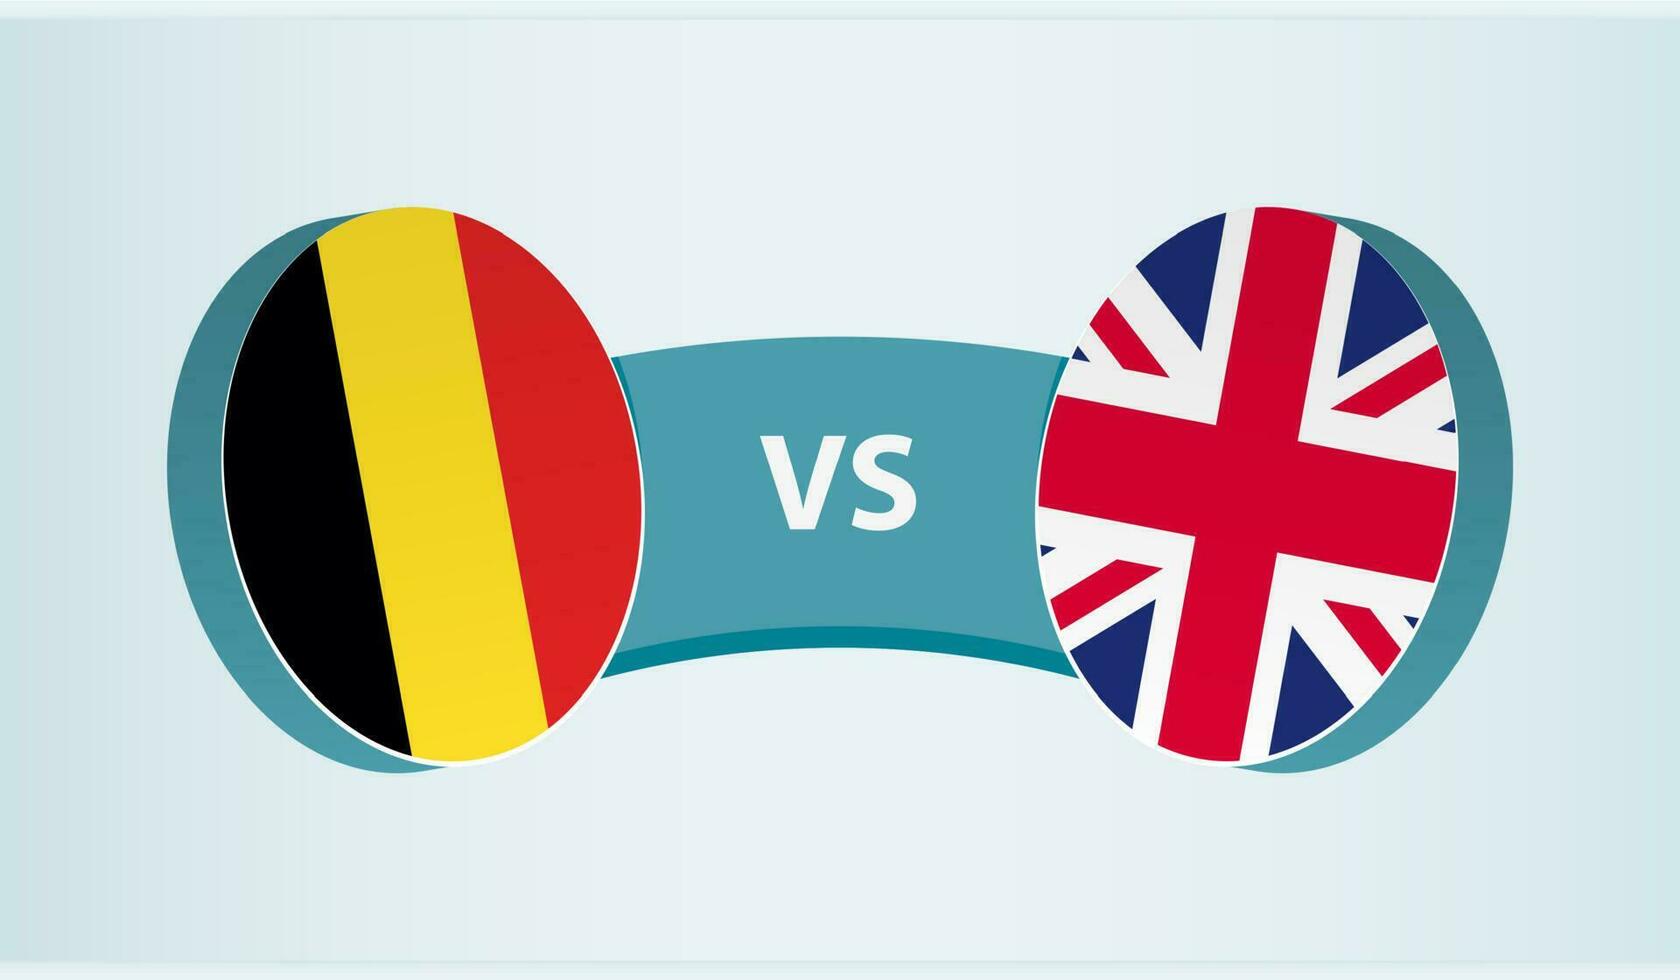 Bélgica versus Unidos reino, equipe Esportes concorrência conceito. vetor